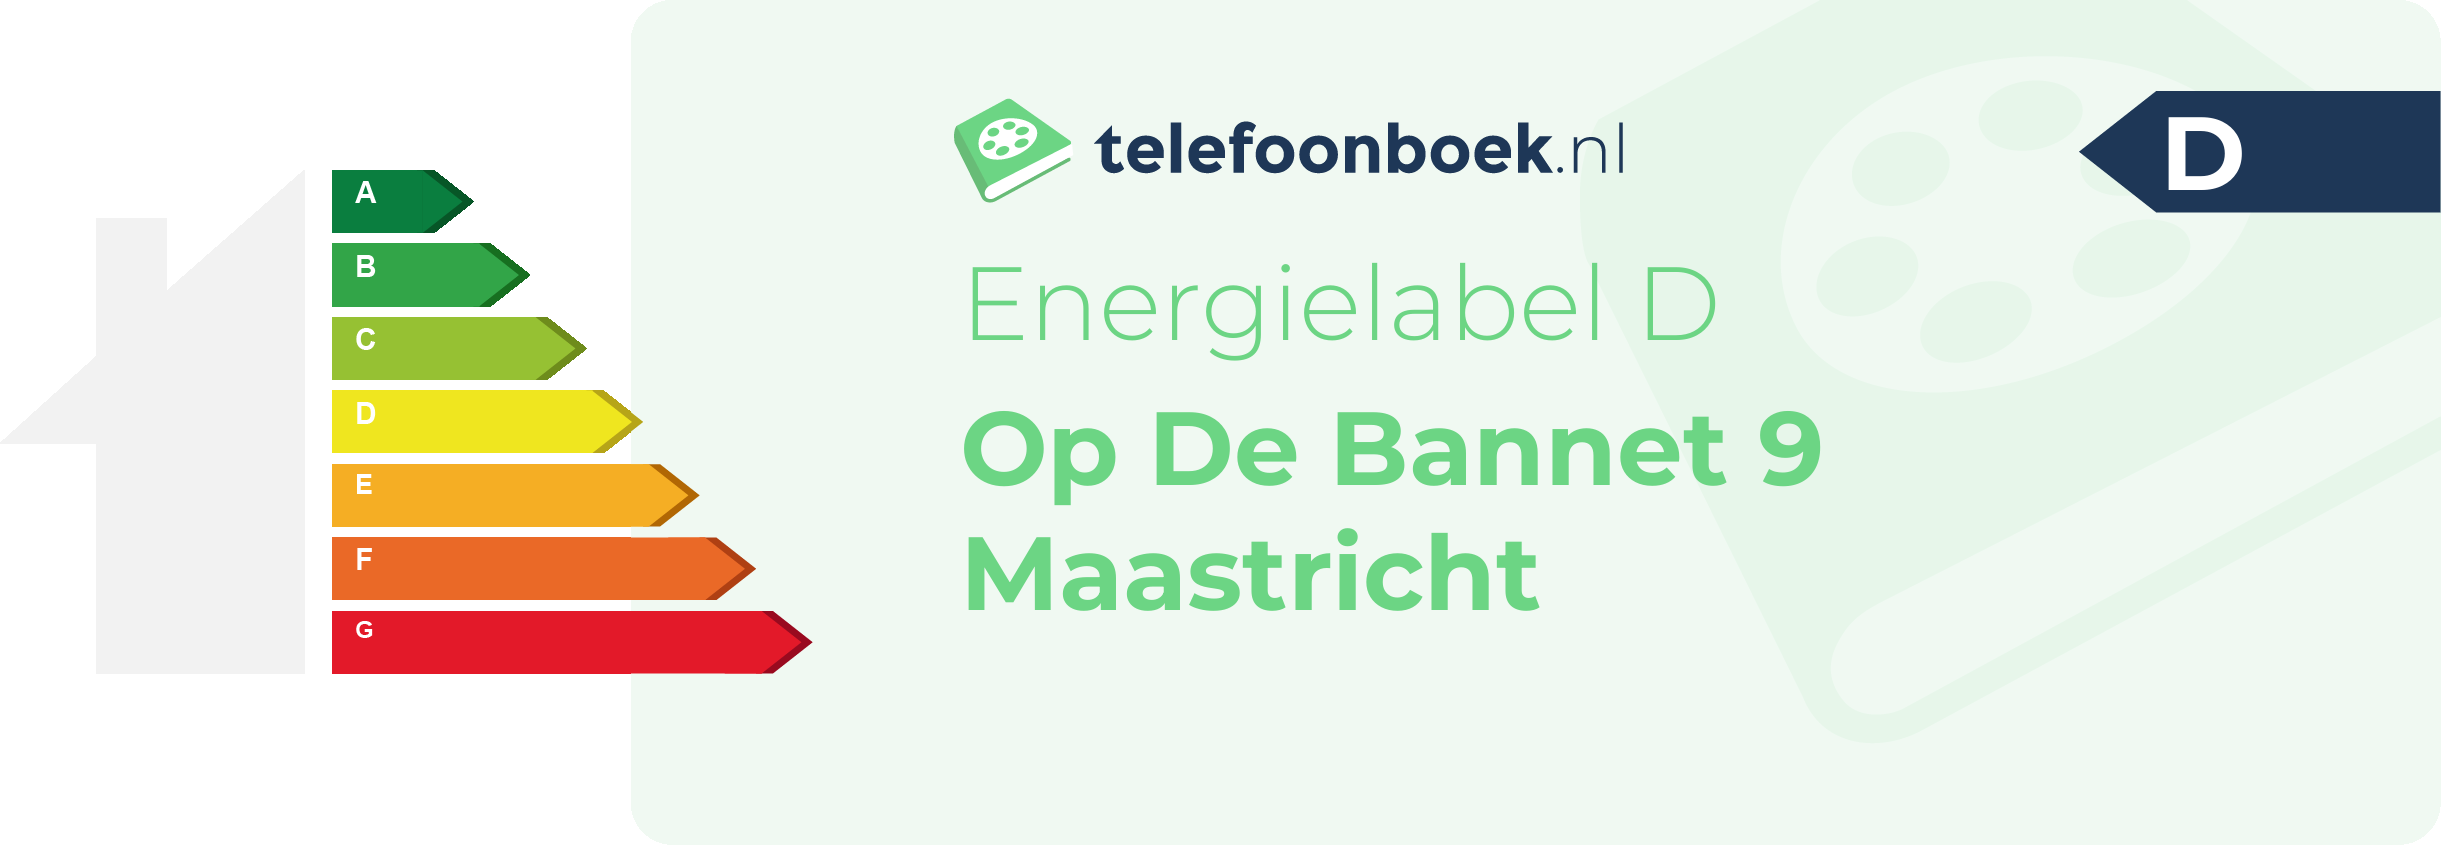 Energielabel Op De Bannet 9 Maastricht